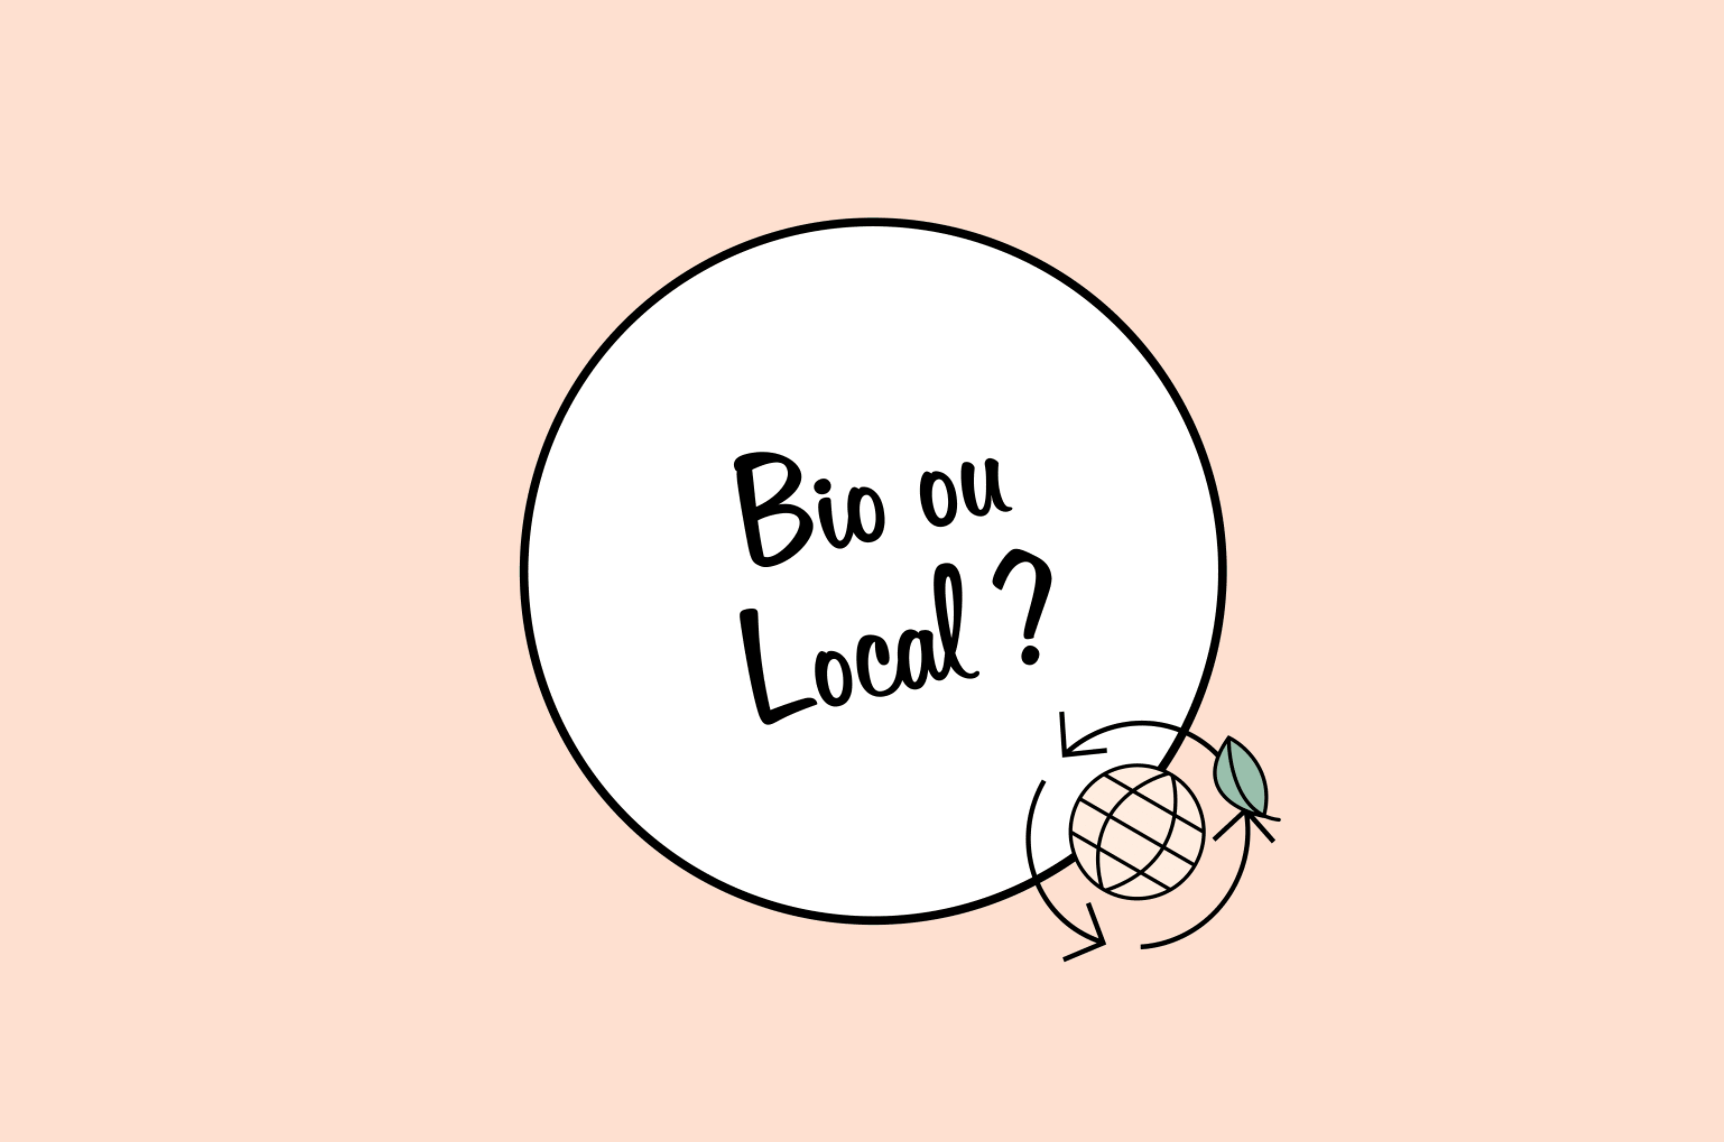 Fond beige avec une bulle blanche cerclée de noir en son centre où il est écrit "bio ou local ?"